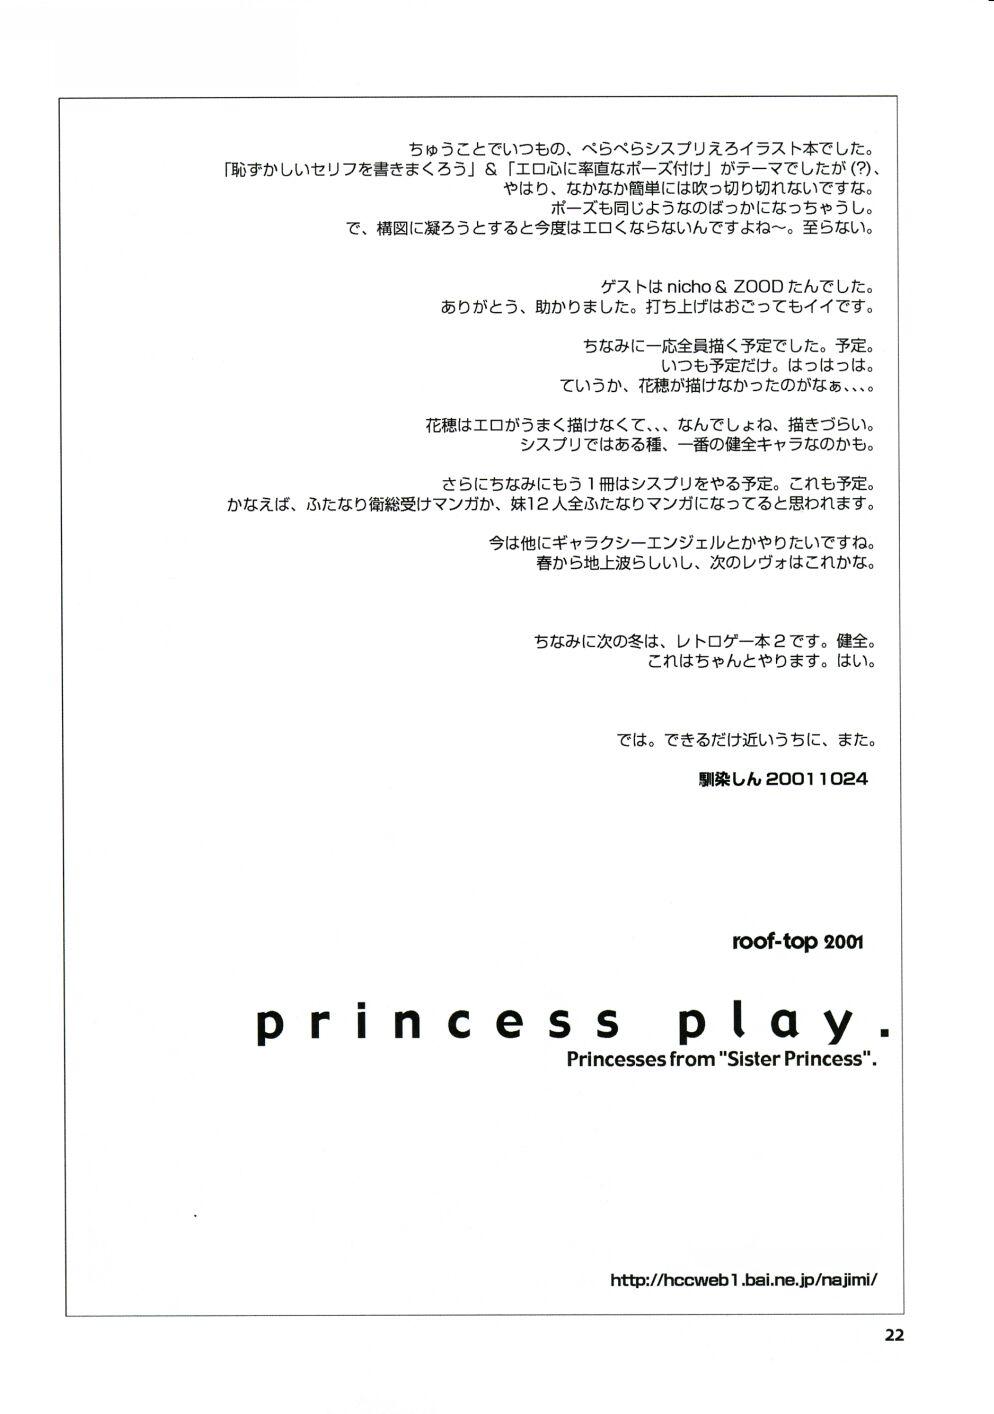 princess play. 20